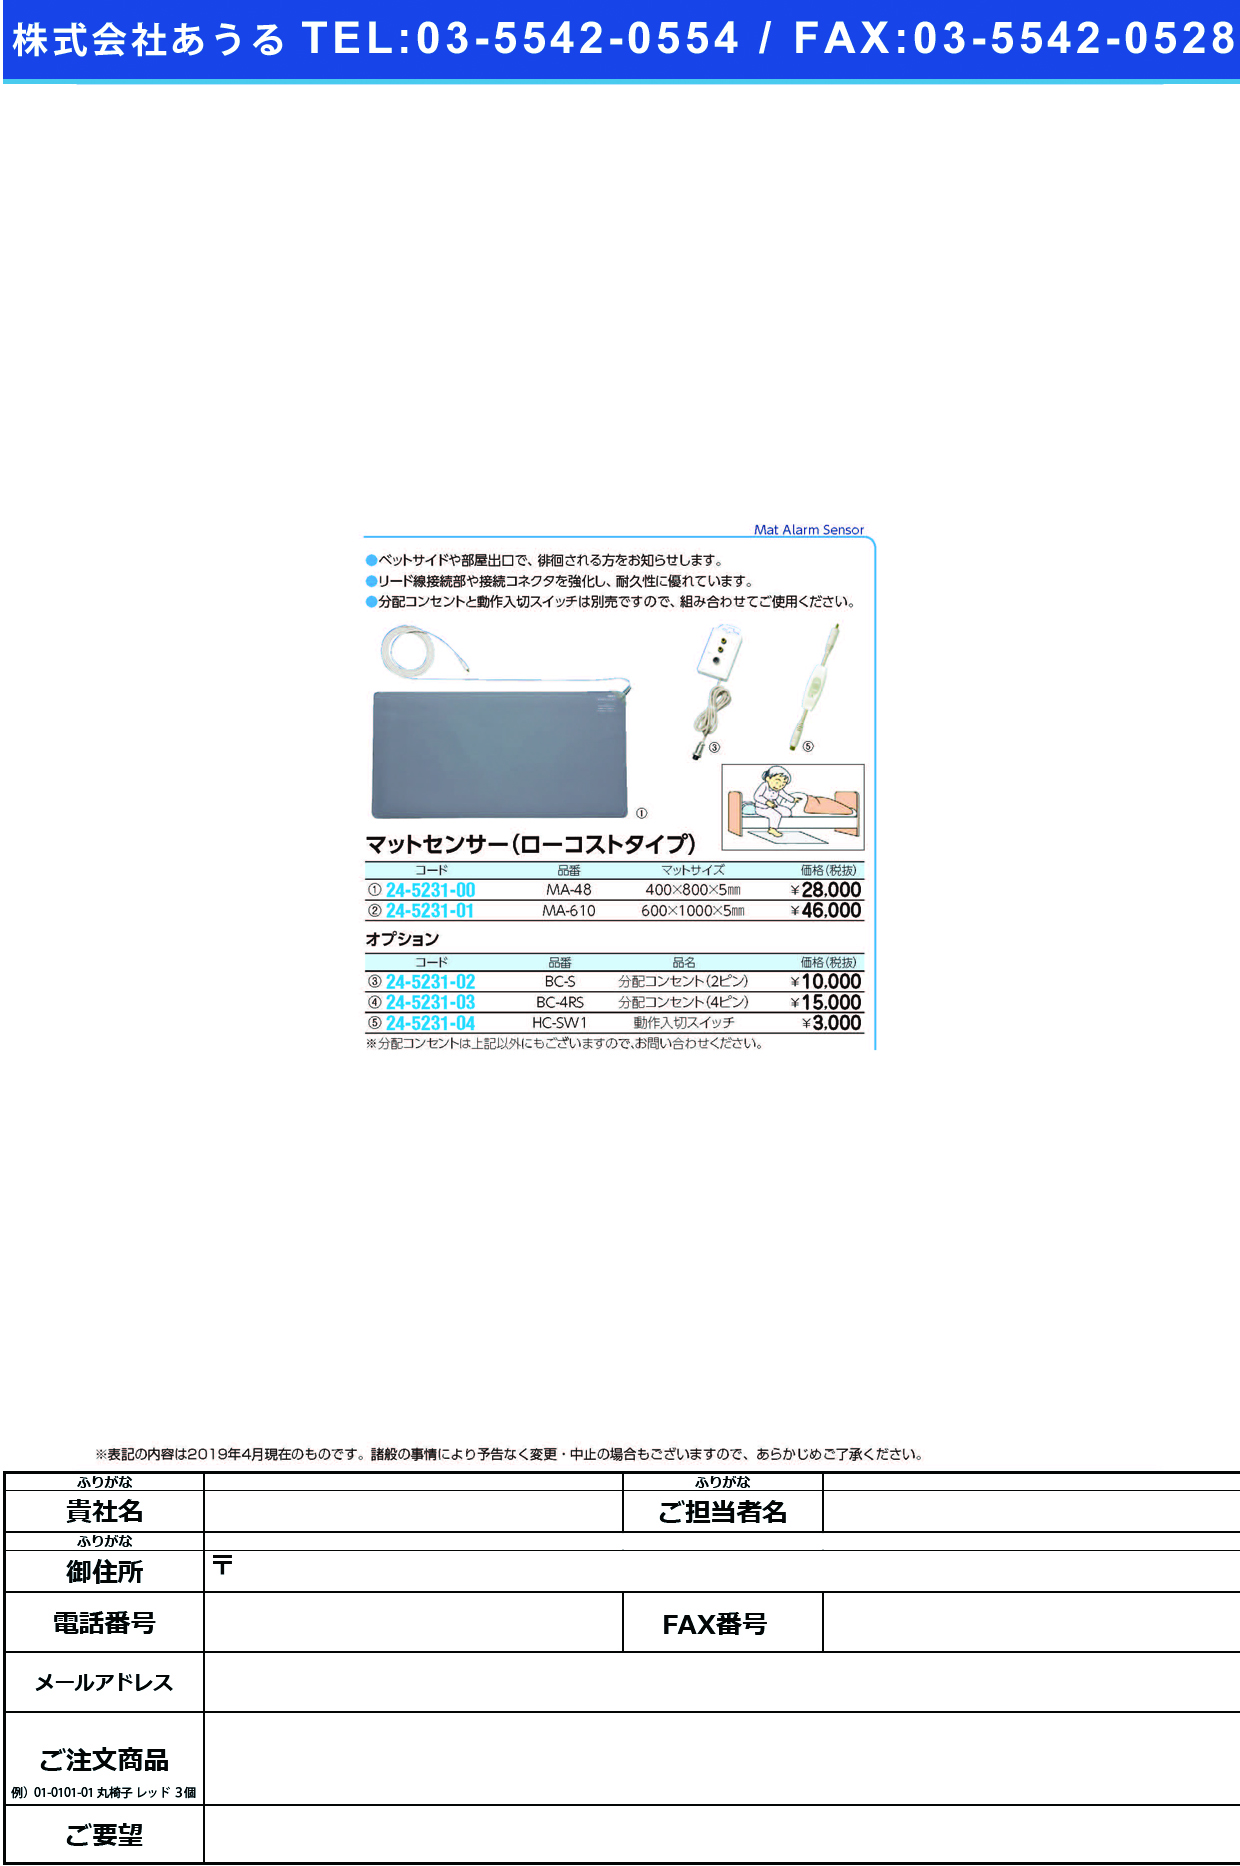 (24-5231-04)動作入切スイッチ（マットセンサー用） HC-SW1 ﾄﾞｳｻｲﾘｷﾘｽｲｯﾁ【1個単位】【2019年カタログ商品】